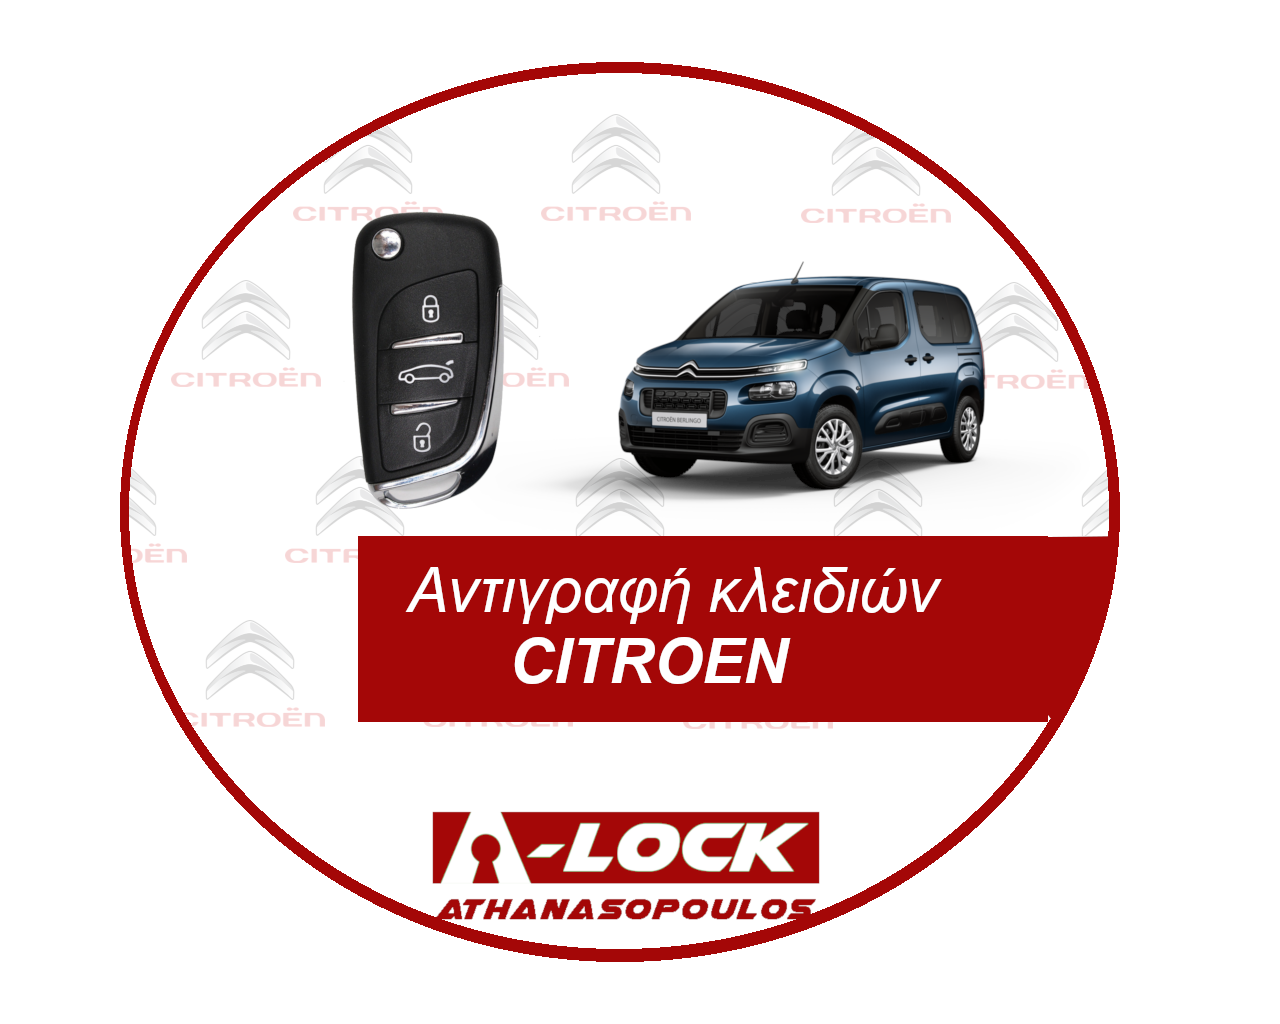 Αντιγραφη Κλειδιων Immobilizer Αυτοκινητου CITROEN - 24 Ωρες Κλειδαράς Γαλάτσι A-Lock Αθανασόπουλος